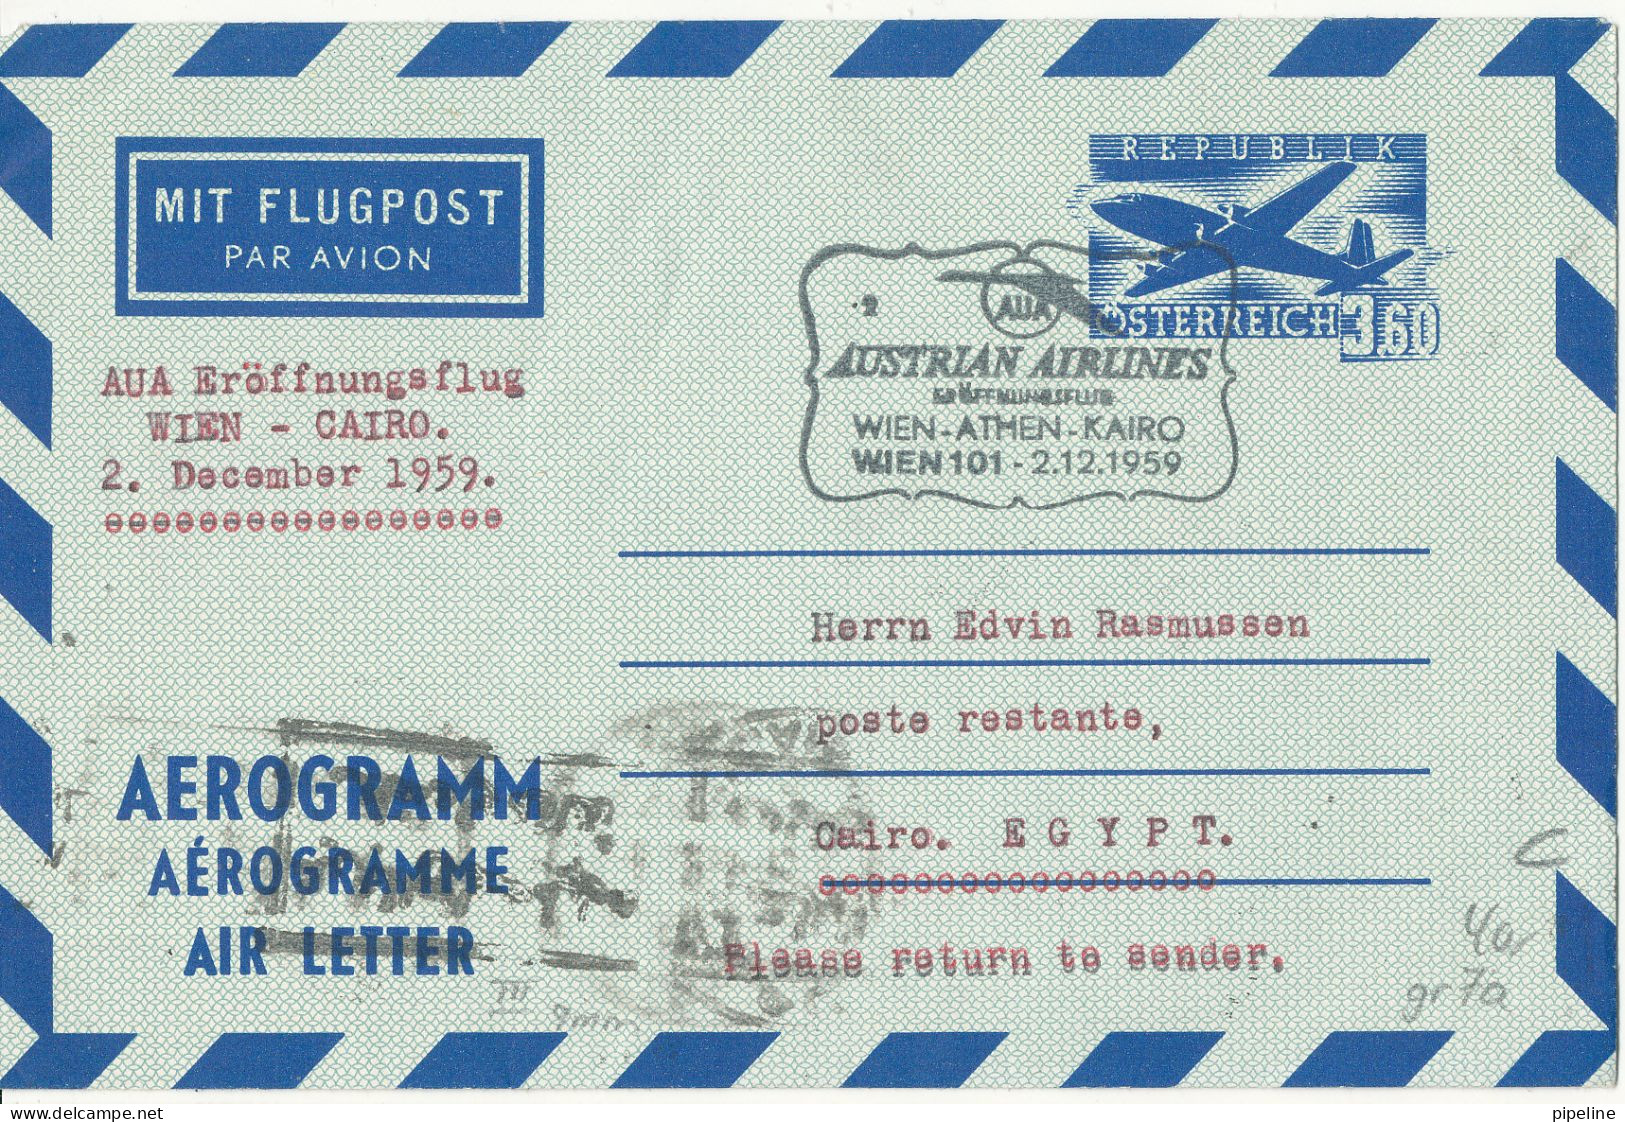 Austria Aerogramme First Flight Austrian Airlines Wien - Athen - Cairo -Wien 2-12-1959 - First Flight Covers